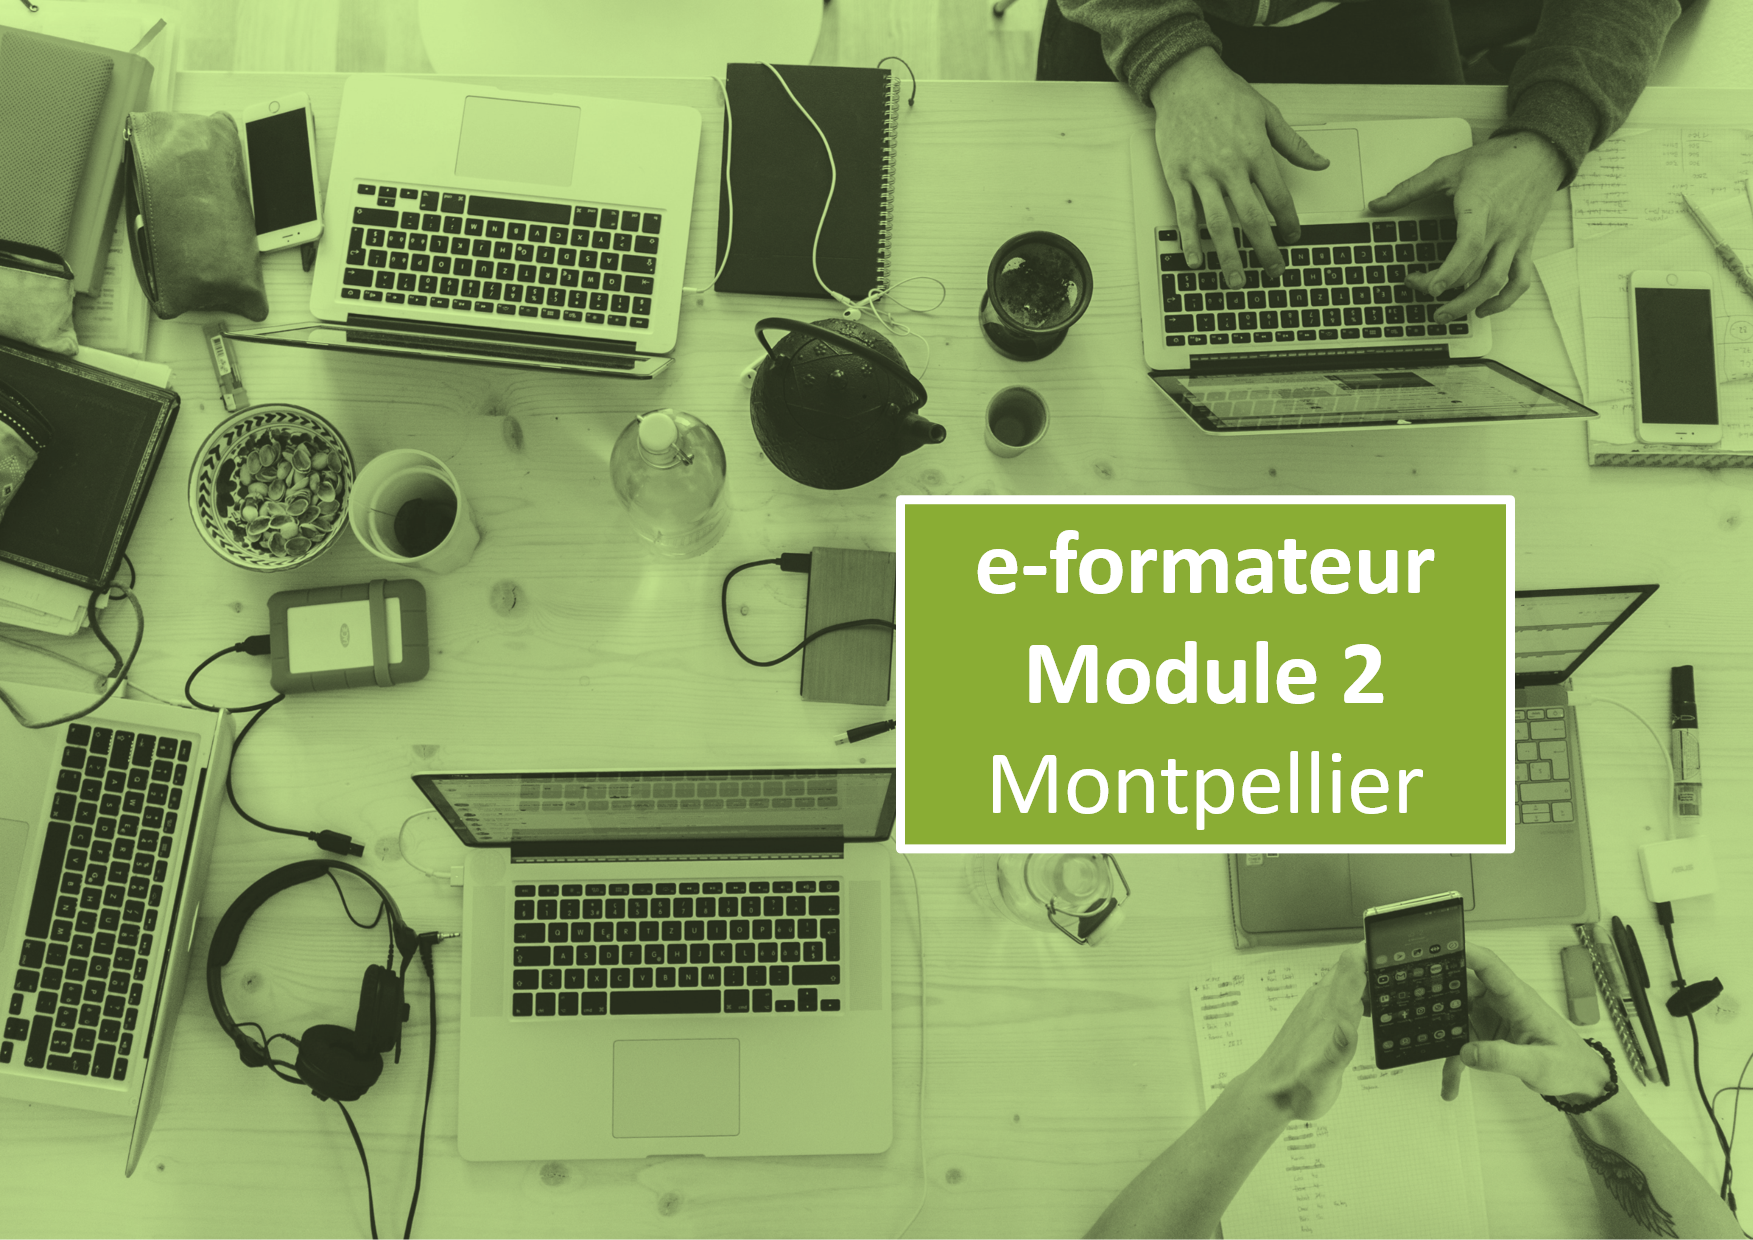 e-formateur Module 2 Montpellier